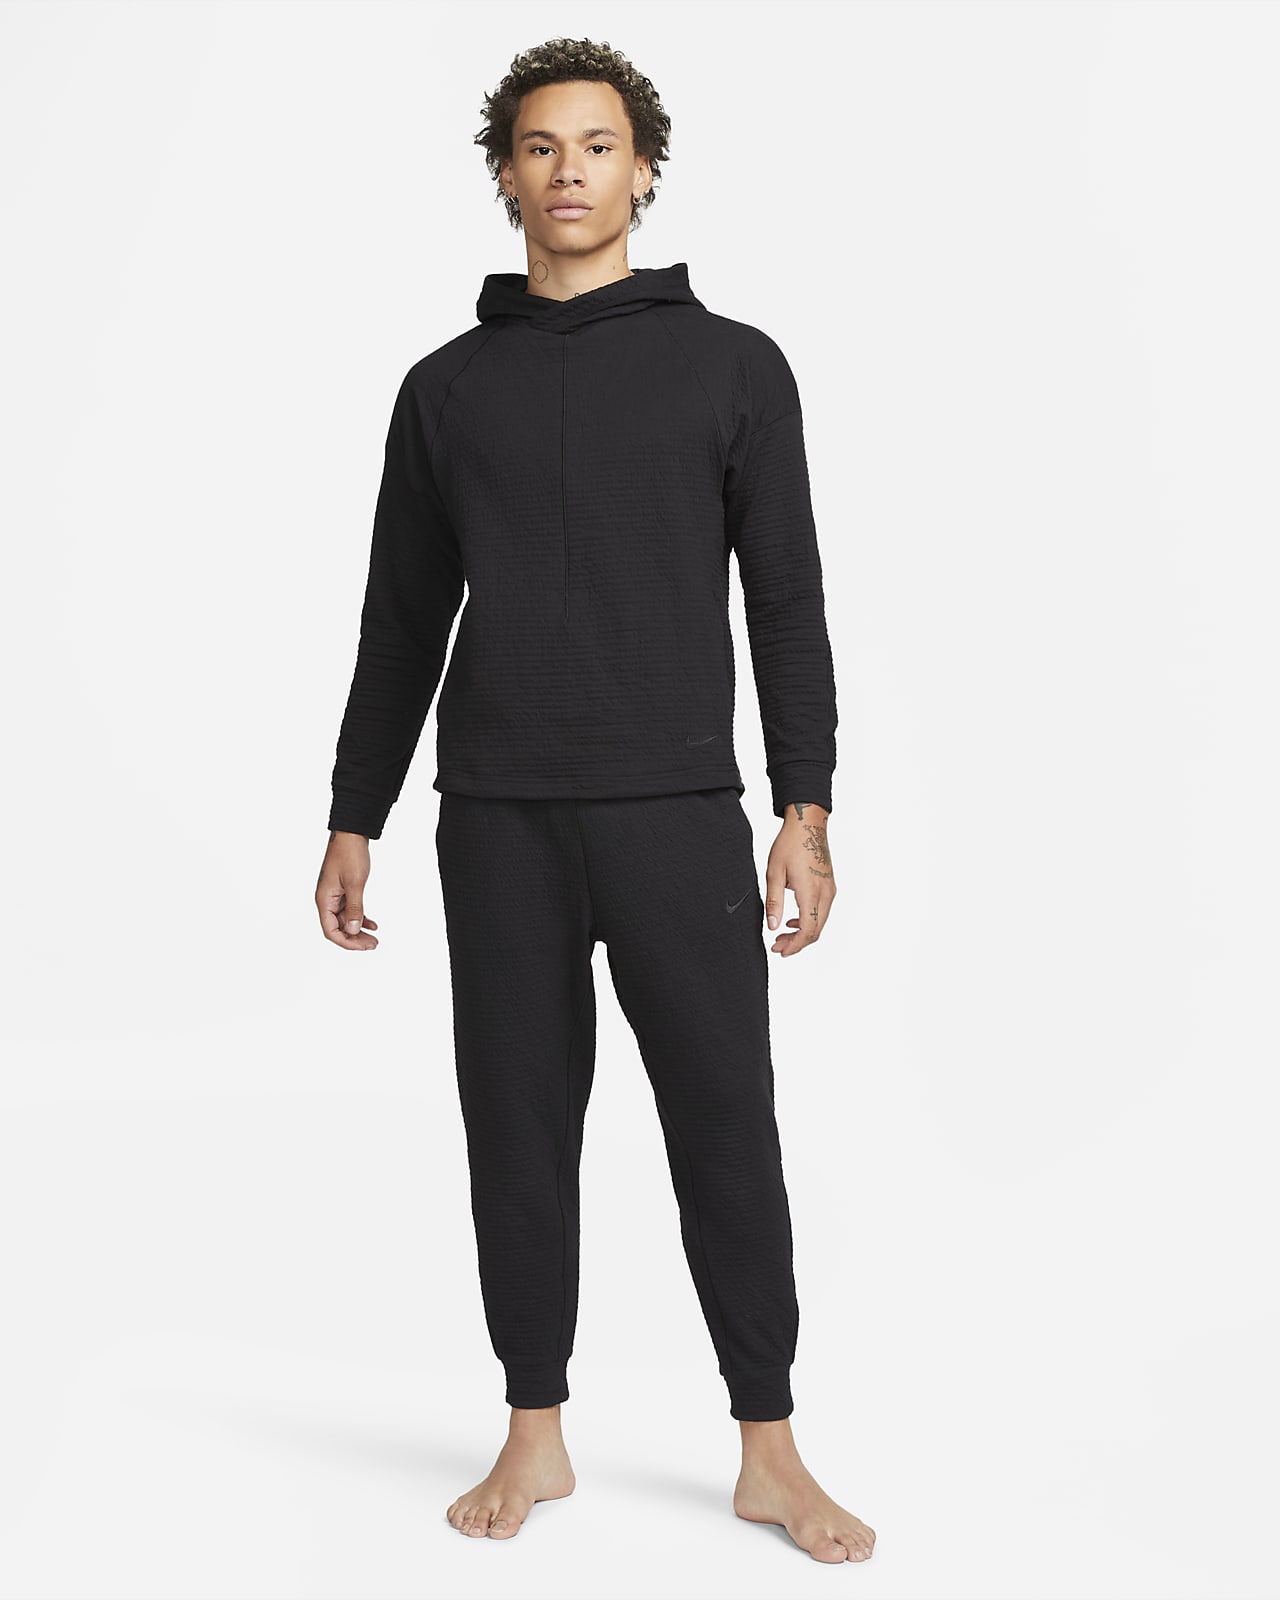 Spodnie Nike Yoga Dri-Fit - DM7037-010 - Ceny i opinie 